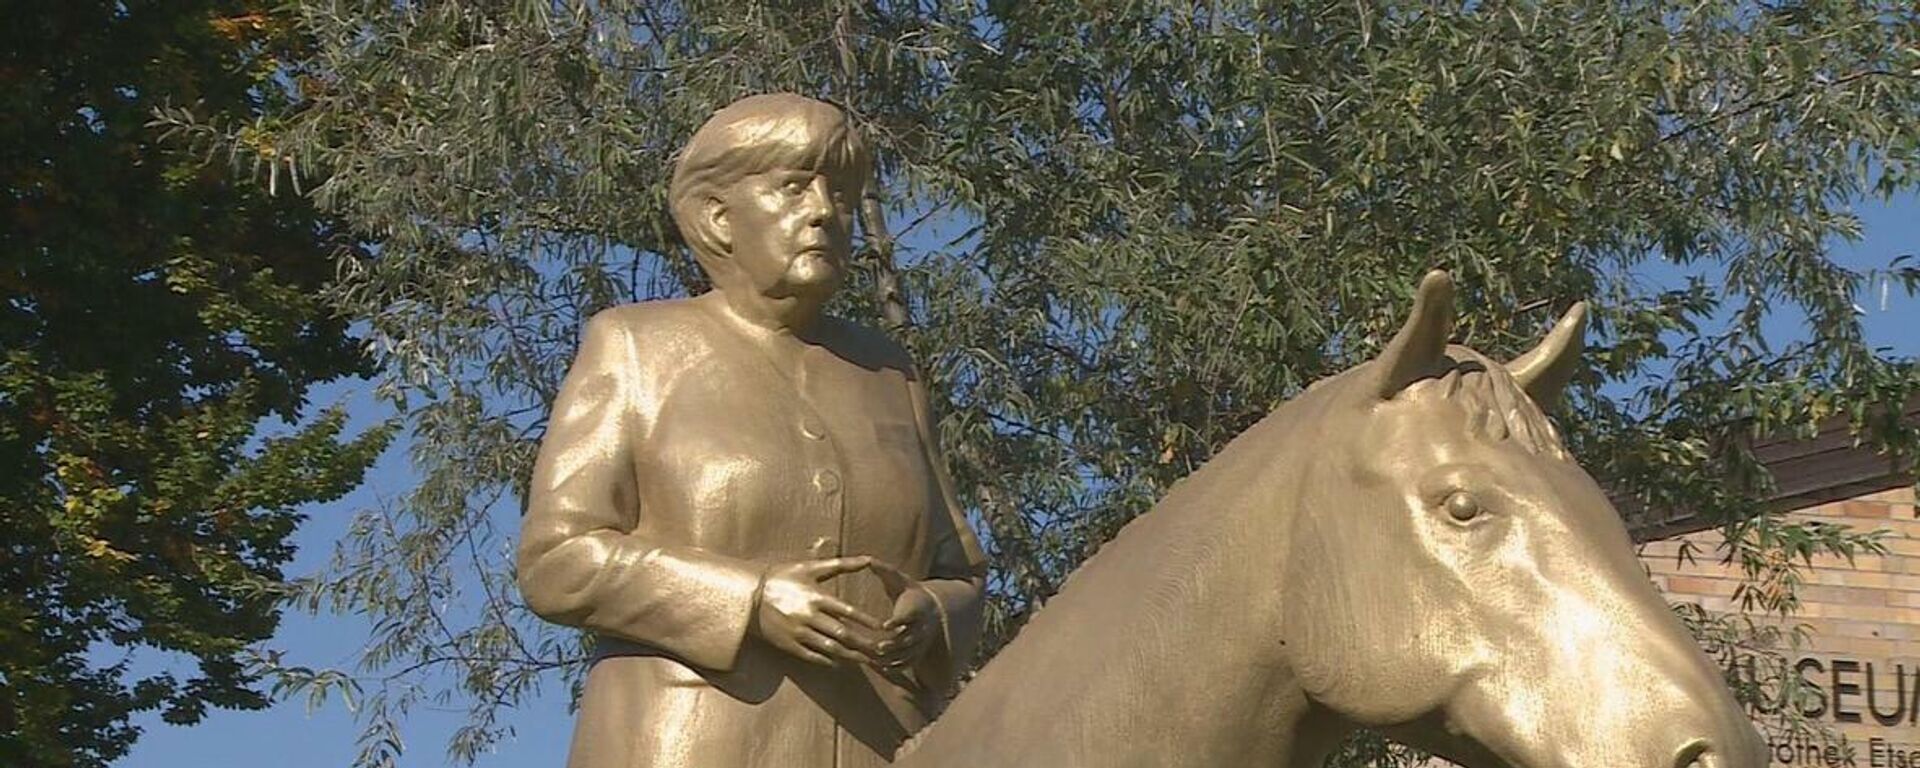 Германия: Золотая статуя Ангелы Меркель на коне появилась в Баварии - Sputnik Молдова, 1920, 11.10.2021